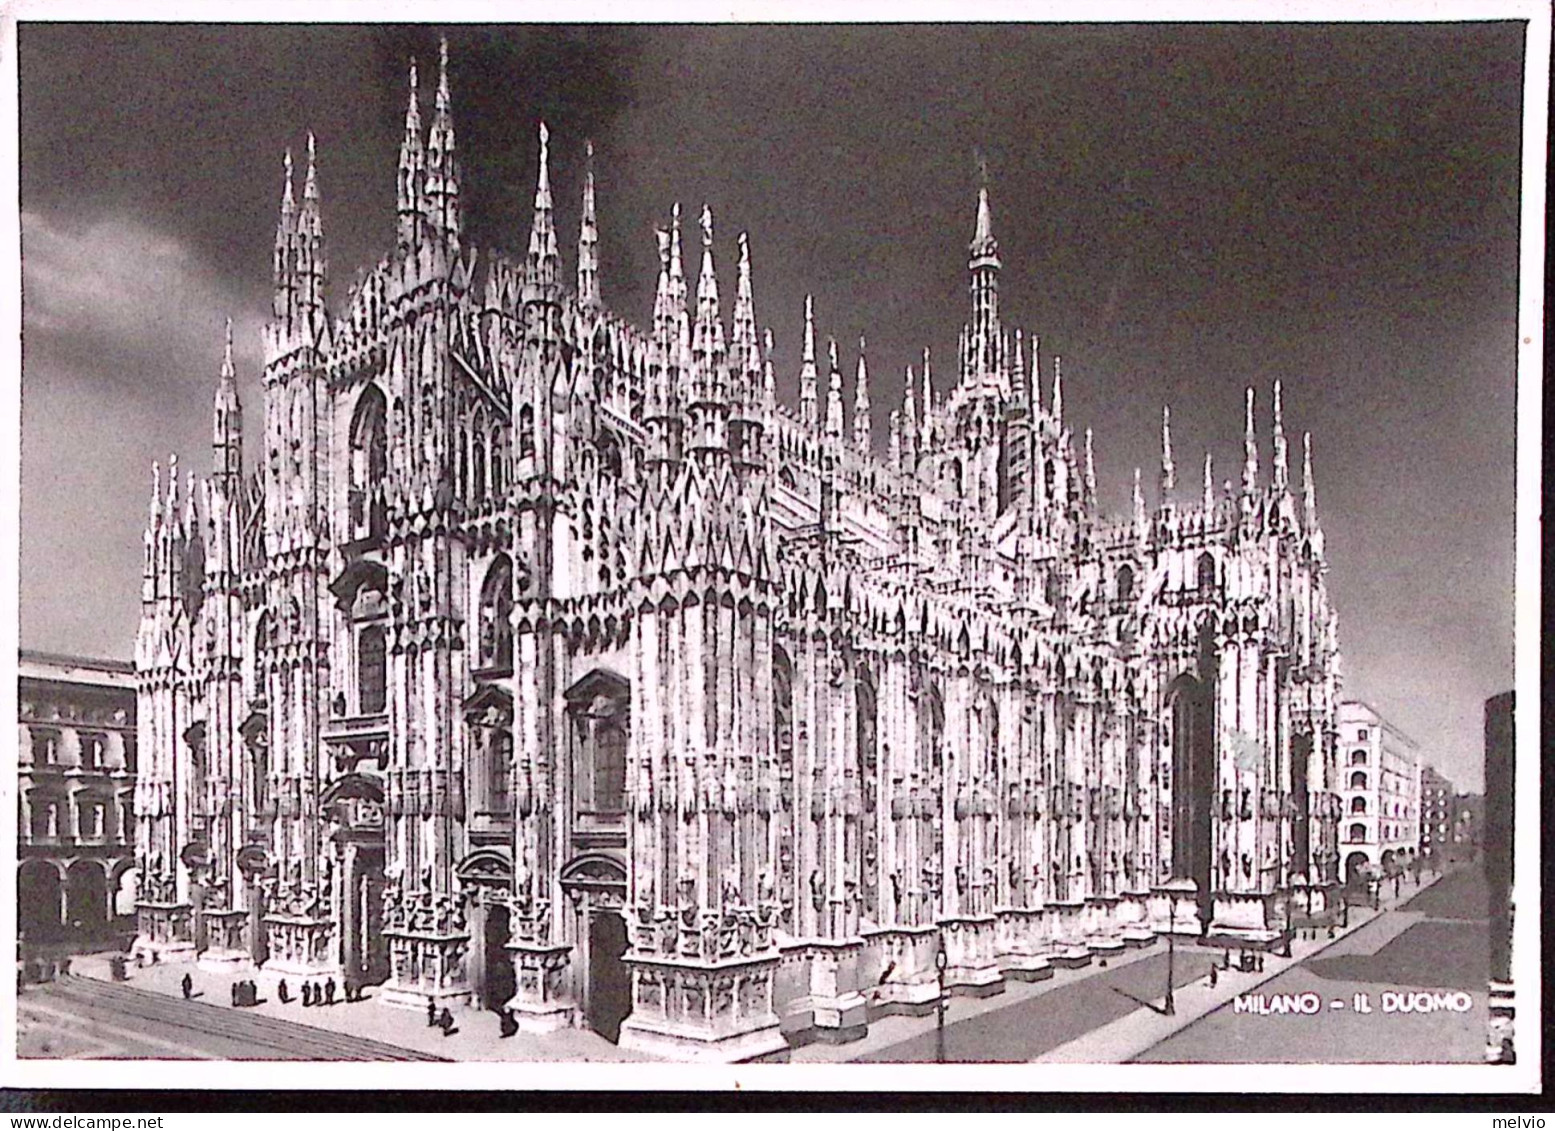 1945-Imperiale Senza Fasci Tre Lire 1 Su Cartolina (Milano Il Duomo) Per La Fran - Marcophilia